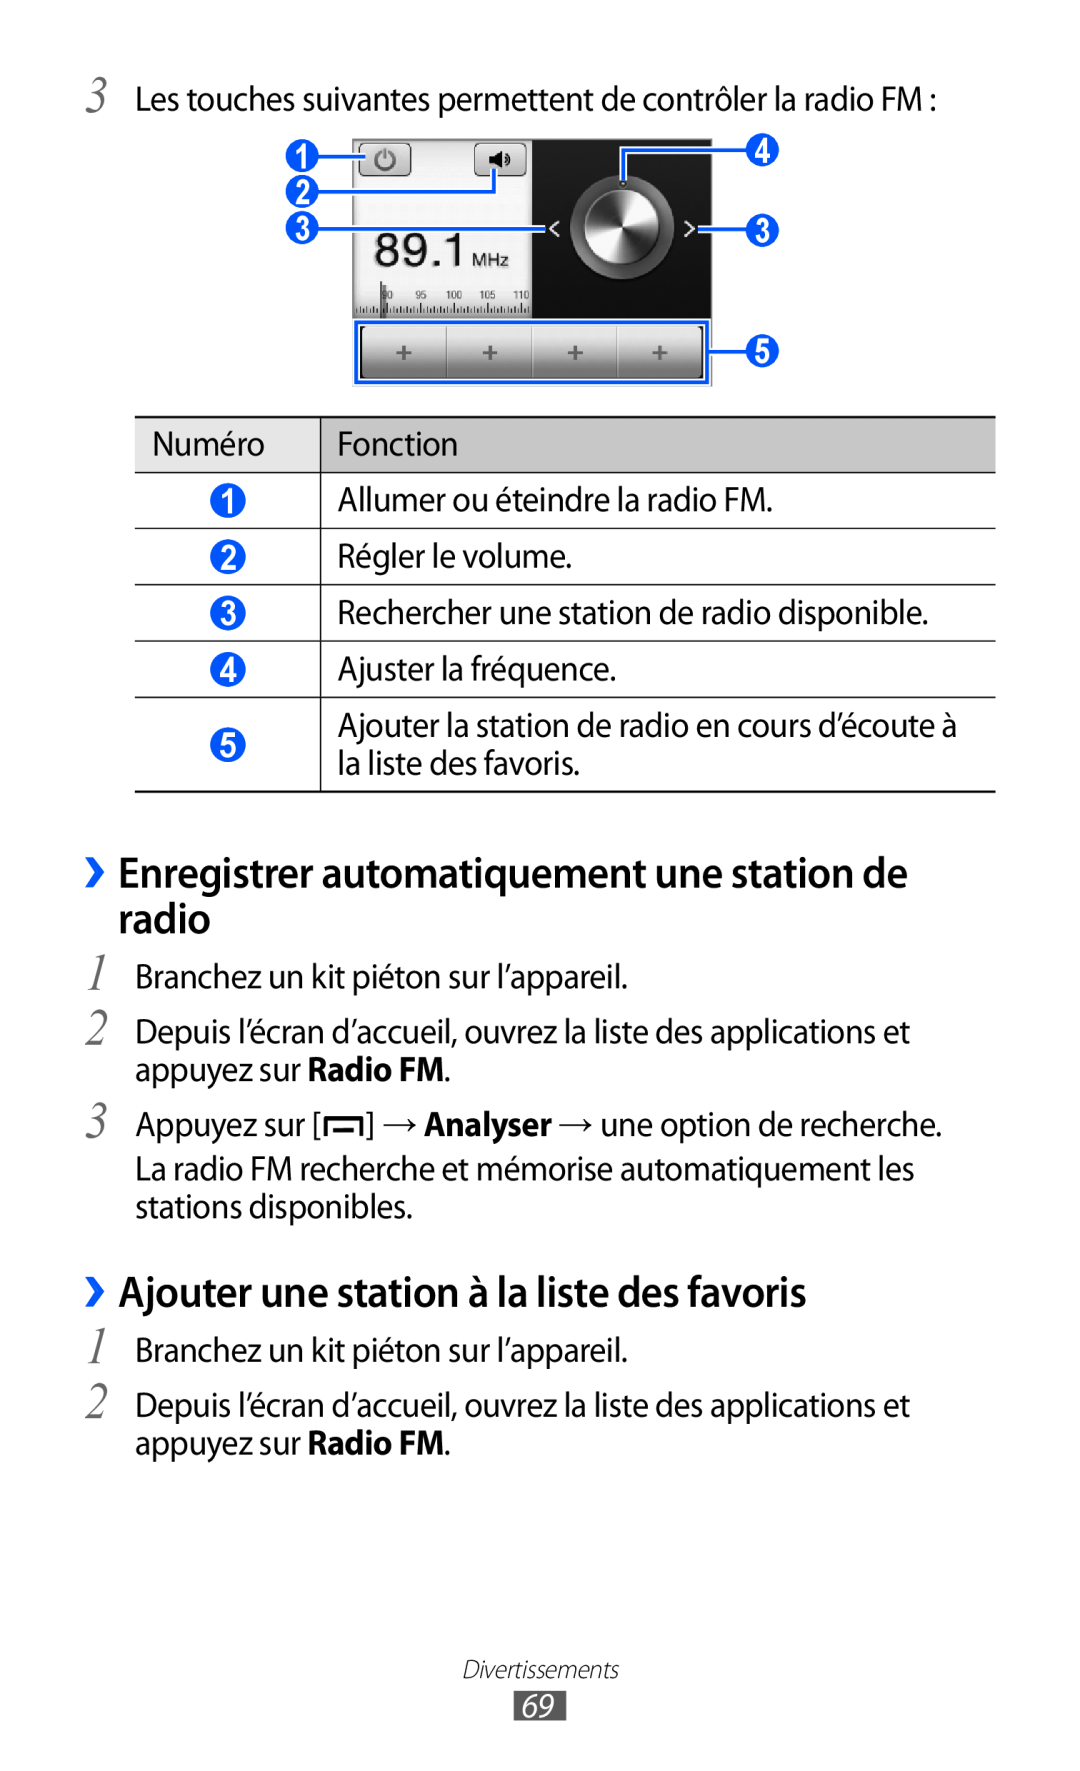 Samsung GT-B5510CAAFTM ››Enregistrer automatiquement une station de radio, ››Ajouter une station à la liste des favoris 